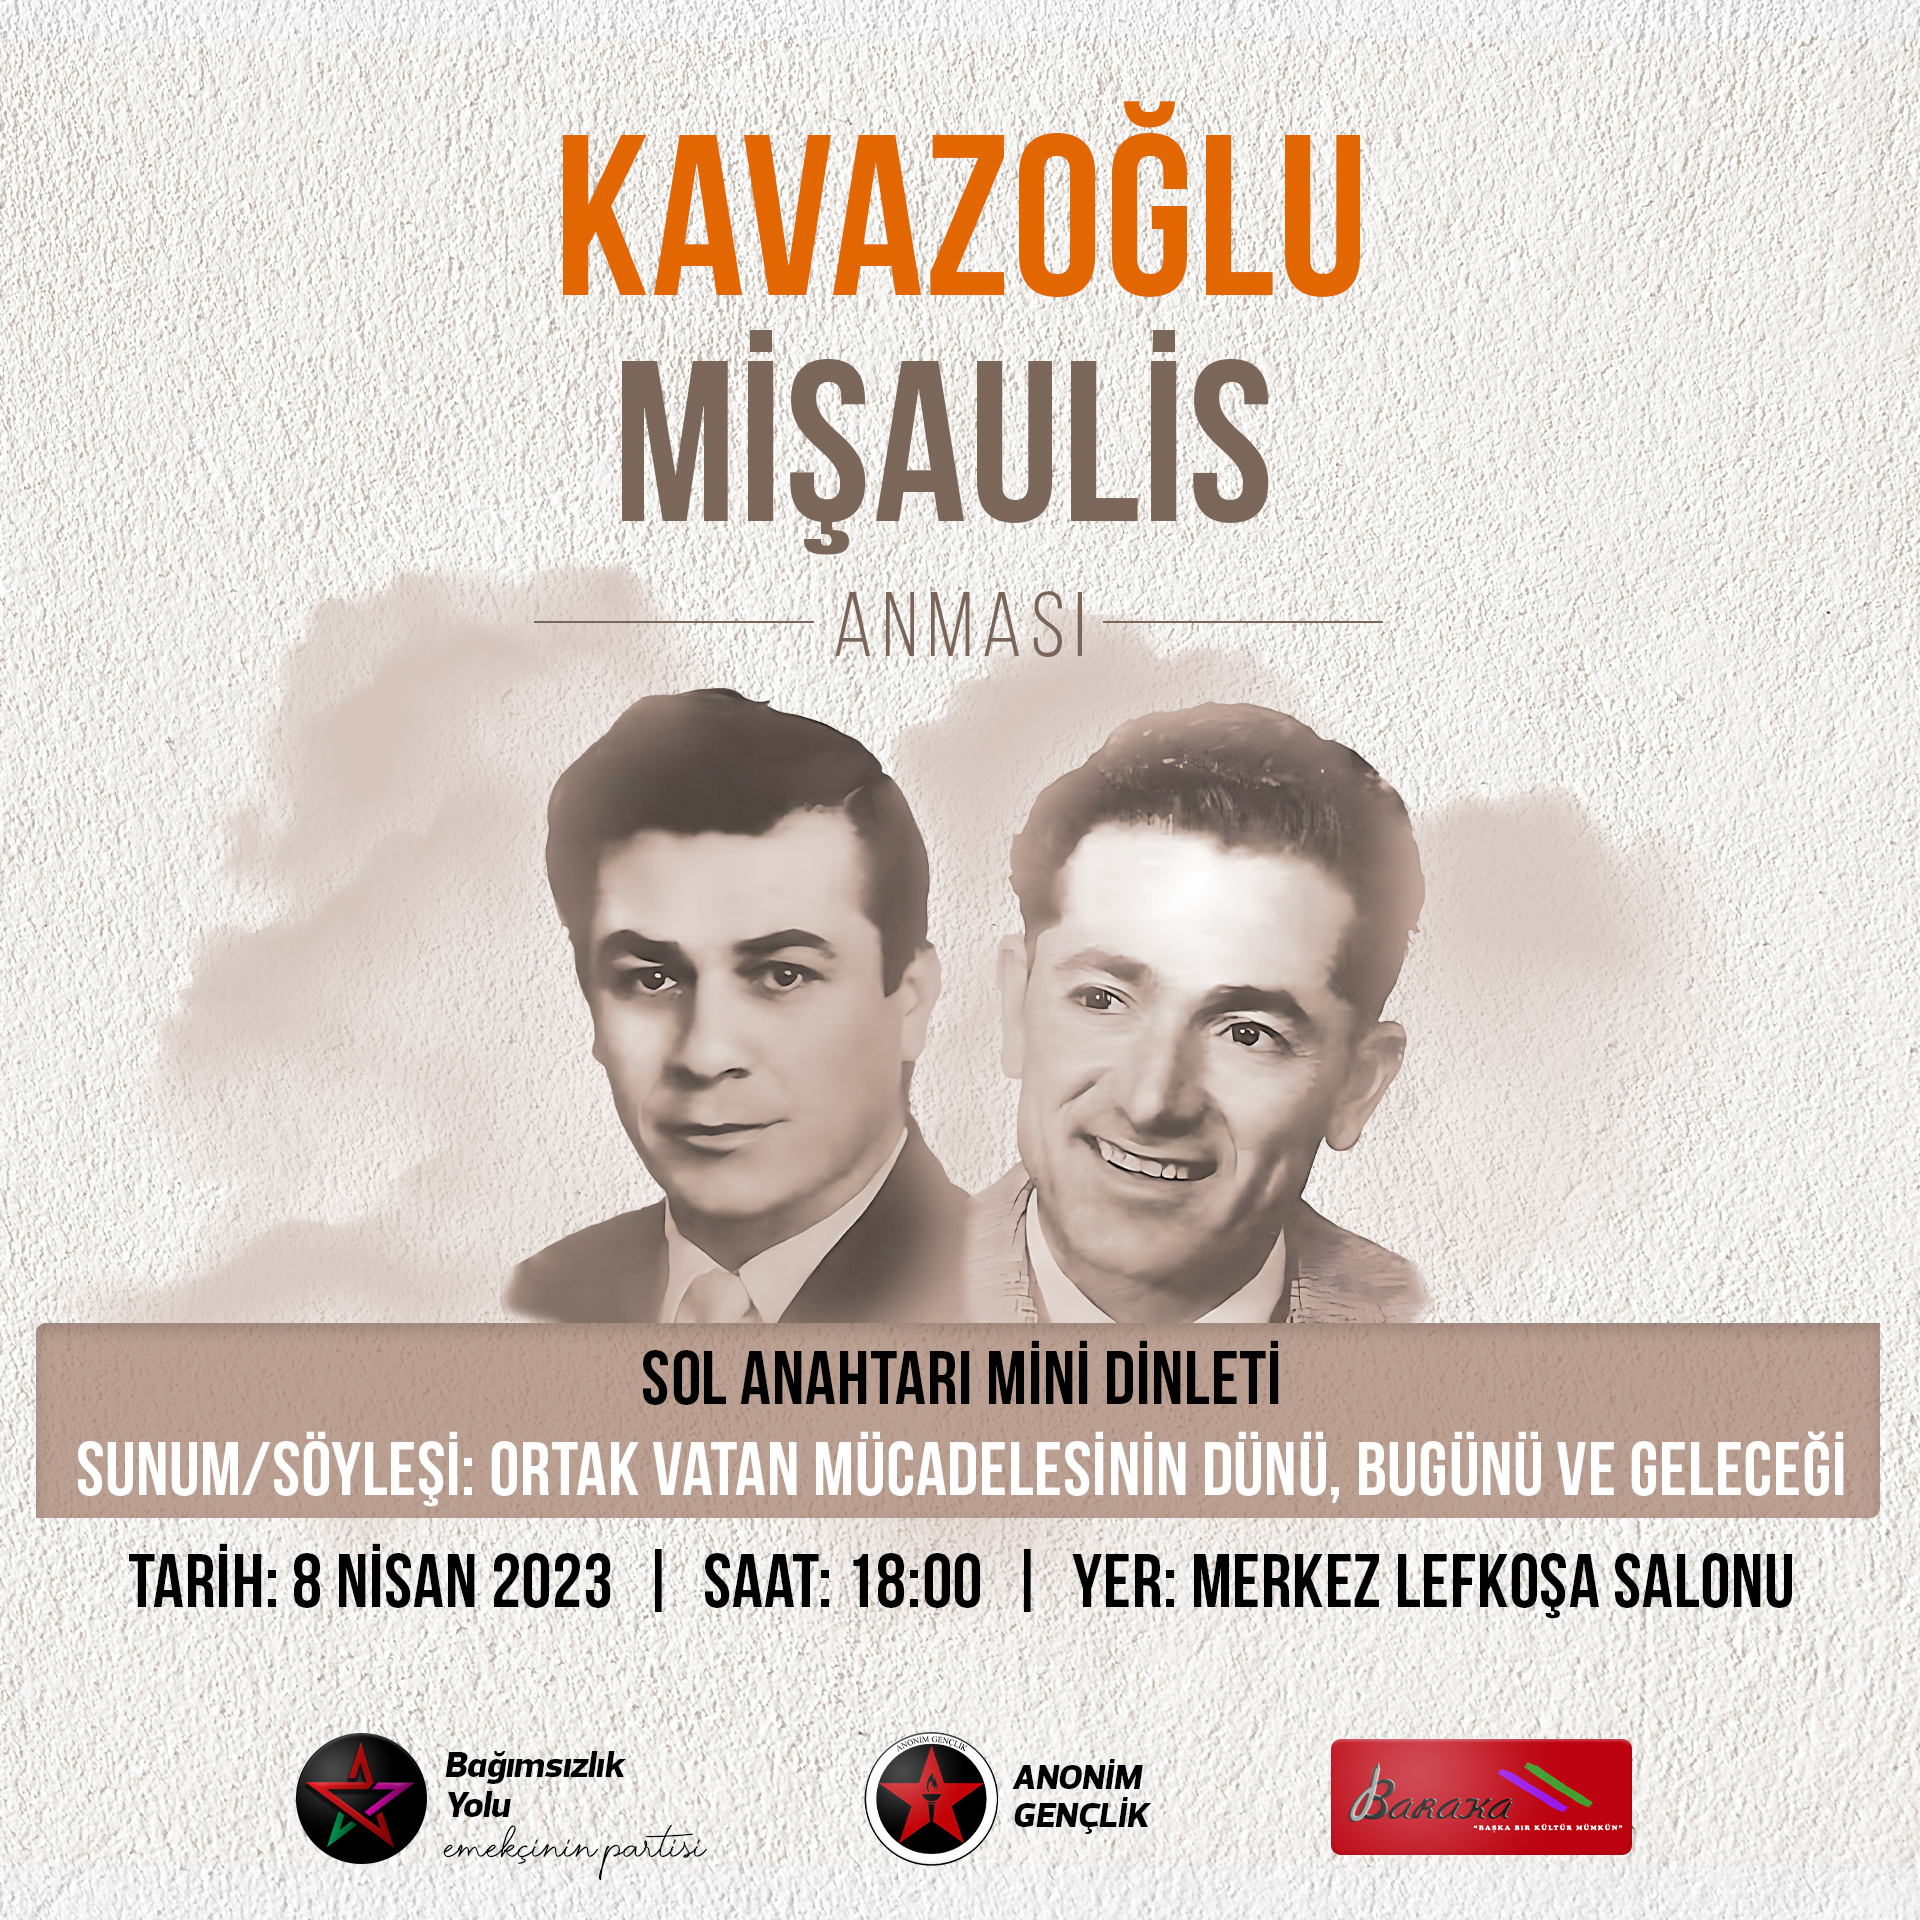 Derviş Ali Kavazoğlu ve Kostas Mişaulis için anma etkinliği düzenleniyor